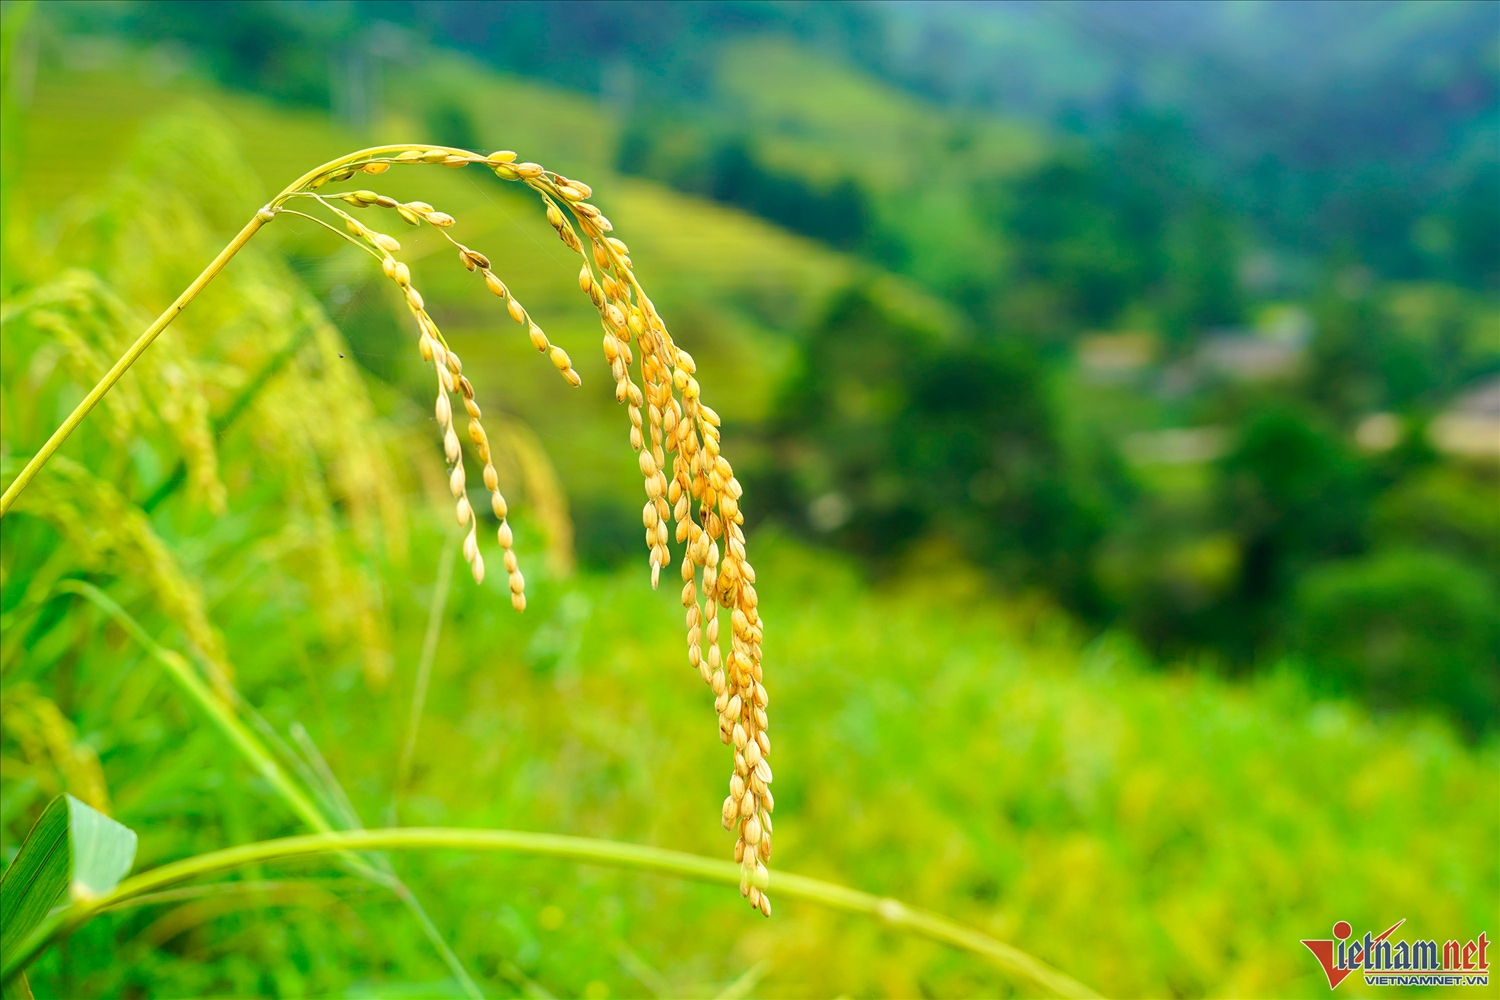 Lúa đã chín đến độ được thu hoạch, bông lúa trĩu hạt hứa hẹn một vụ mùa bội thu cho bà con người Dao ở Xà Phìn